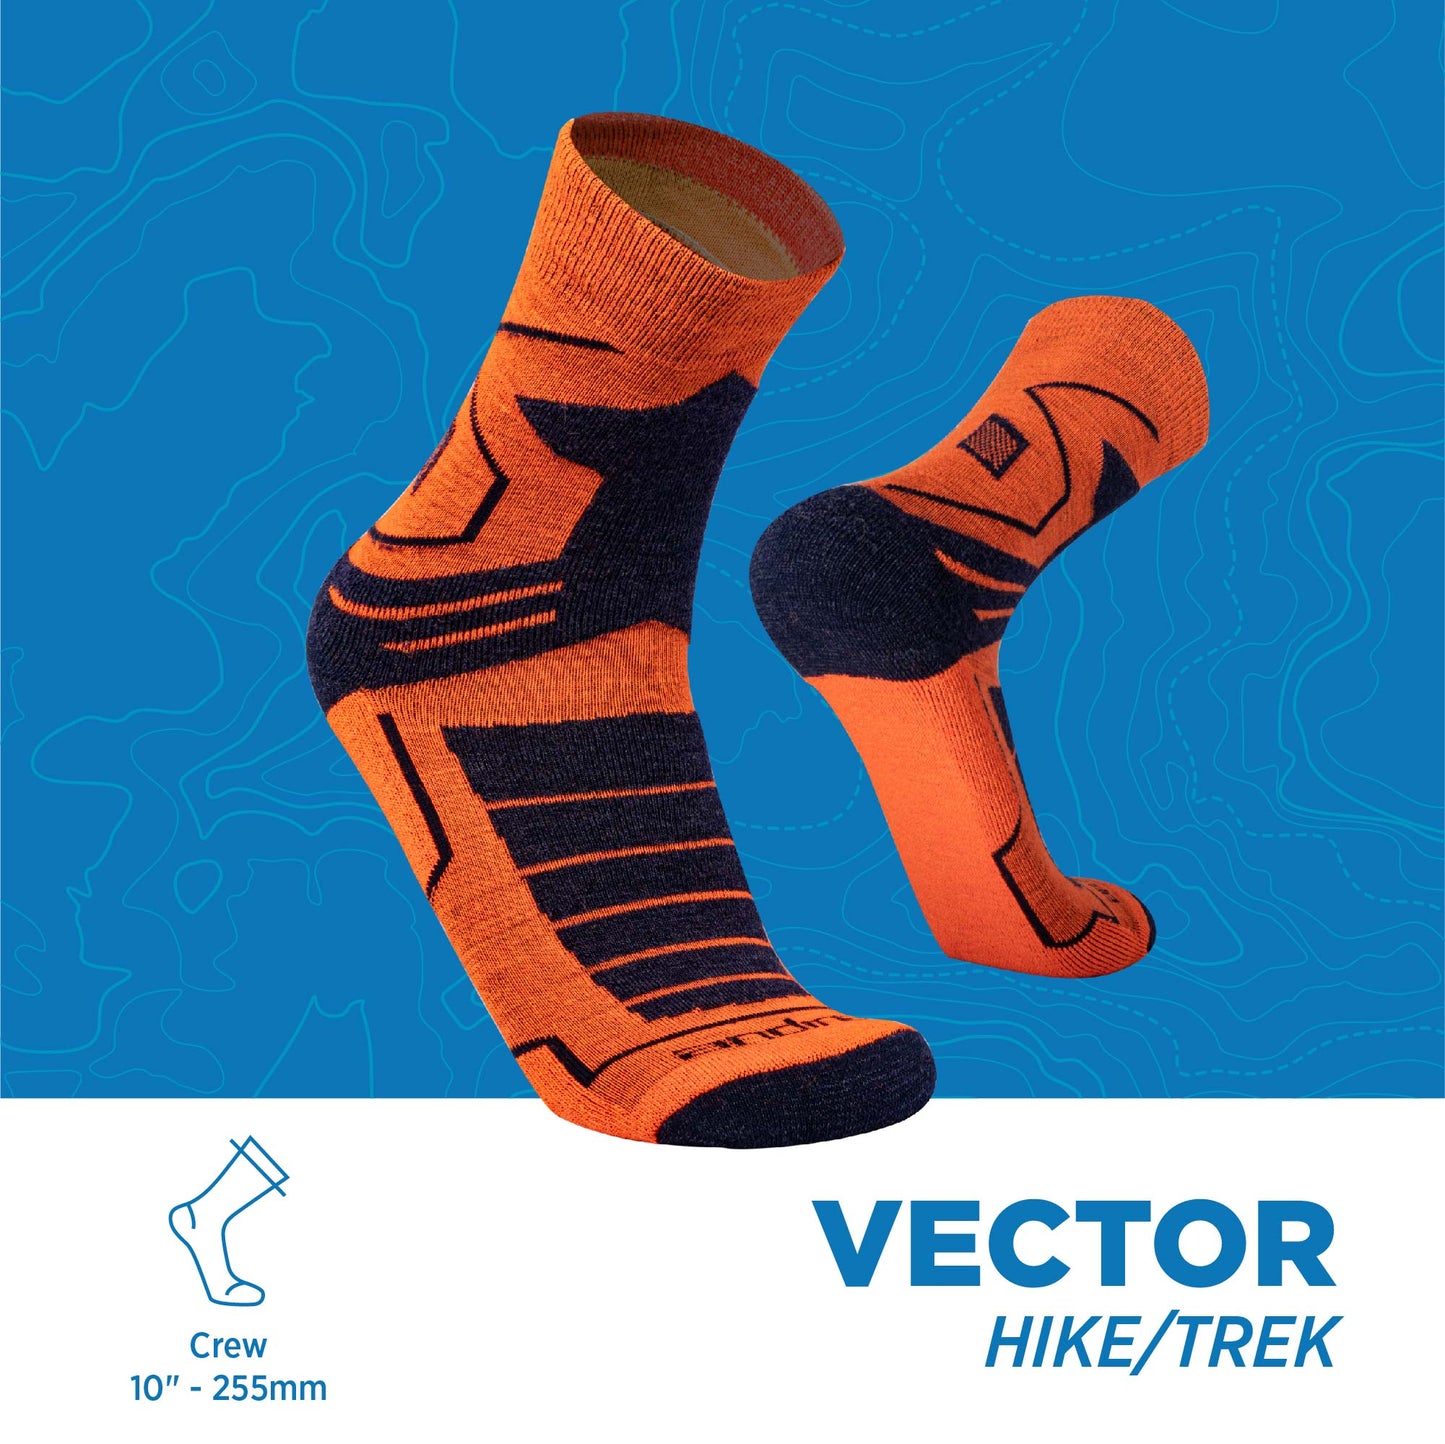 Vector | Hike & Trek Socks